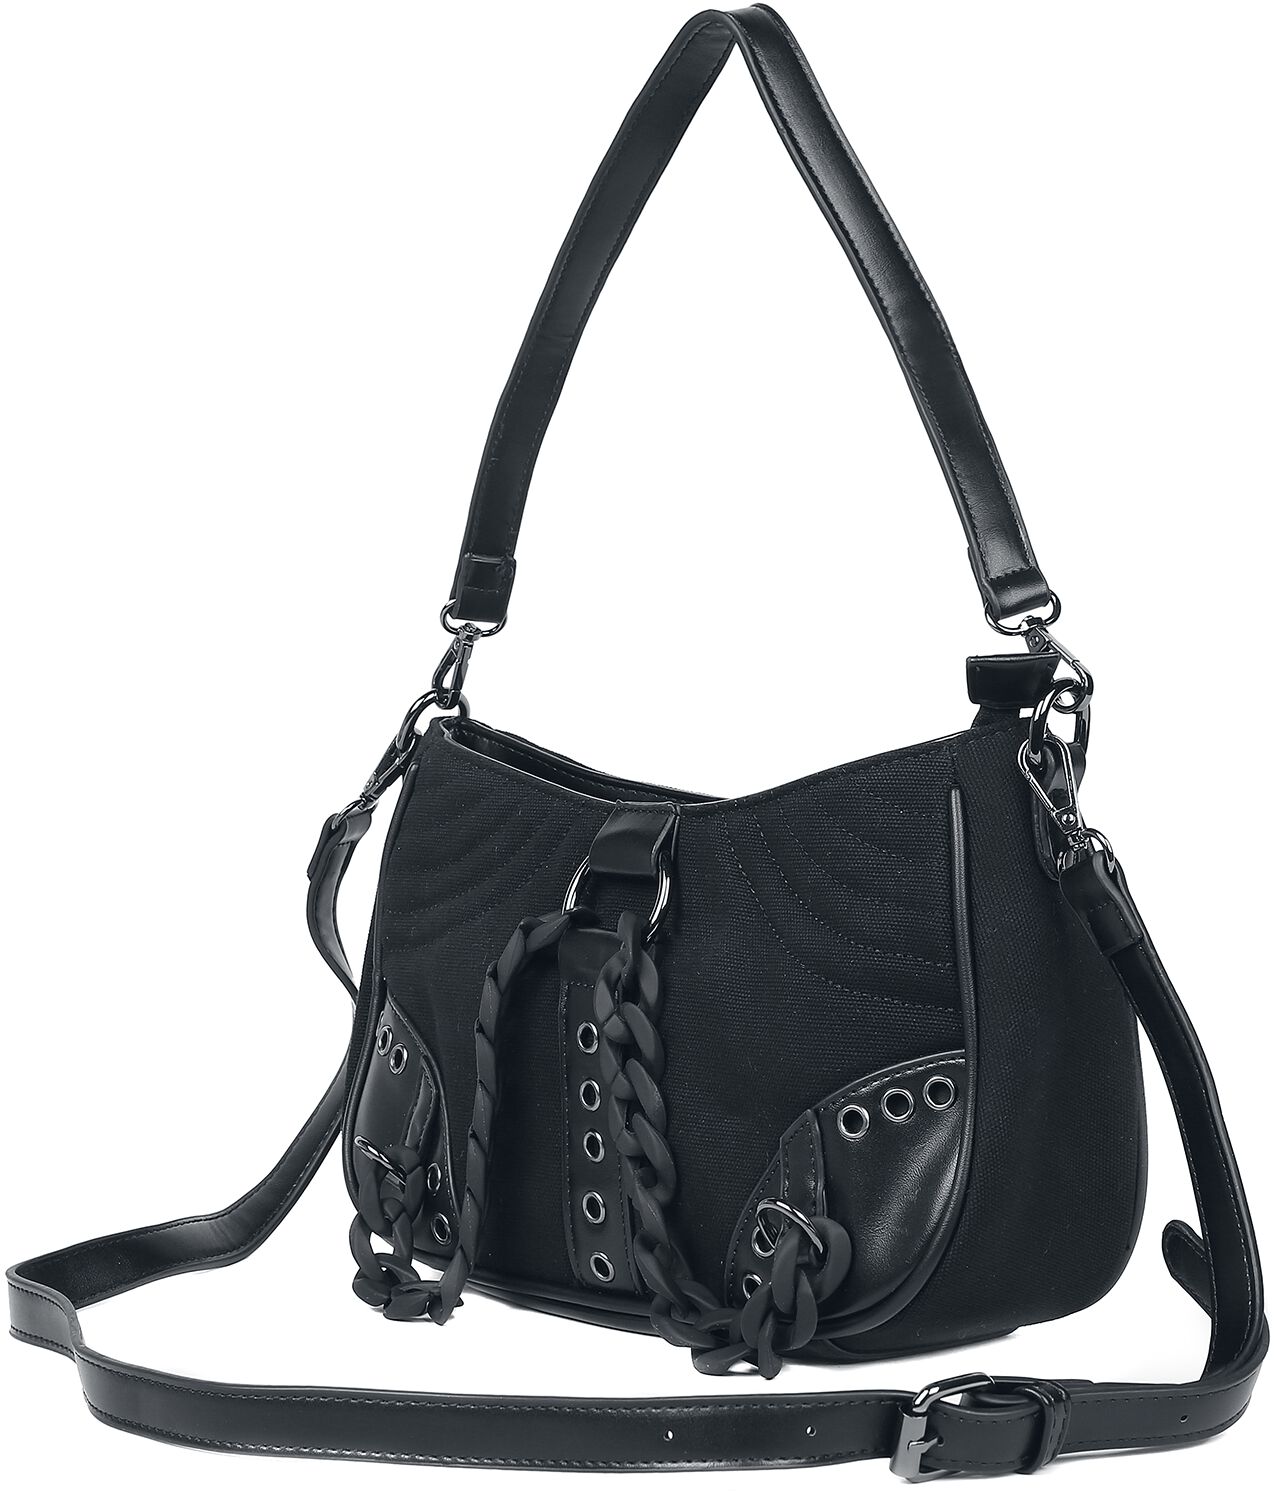 Banned Alternative - Gothic Handtasche - Earthworm - für Damen - schwarz